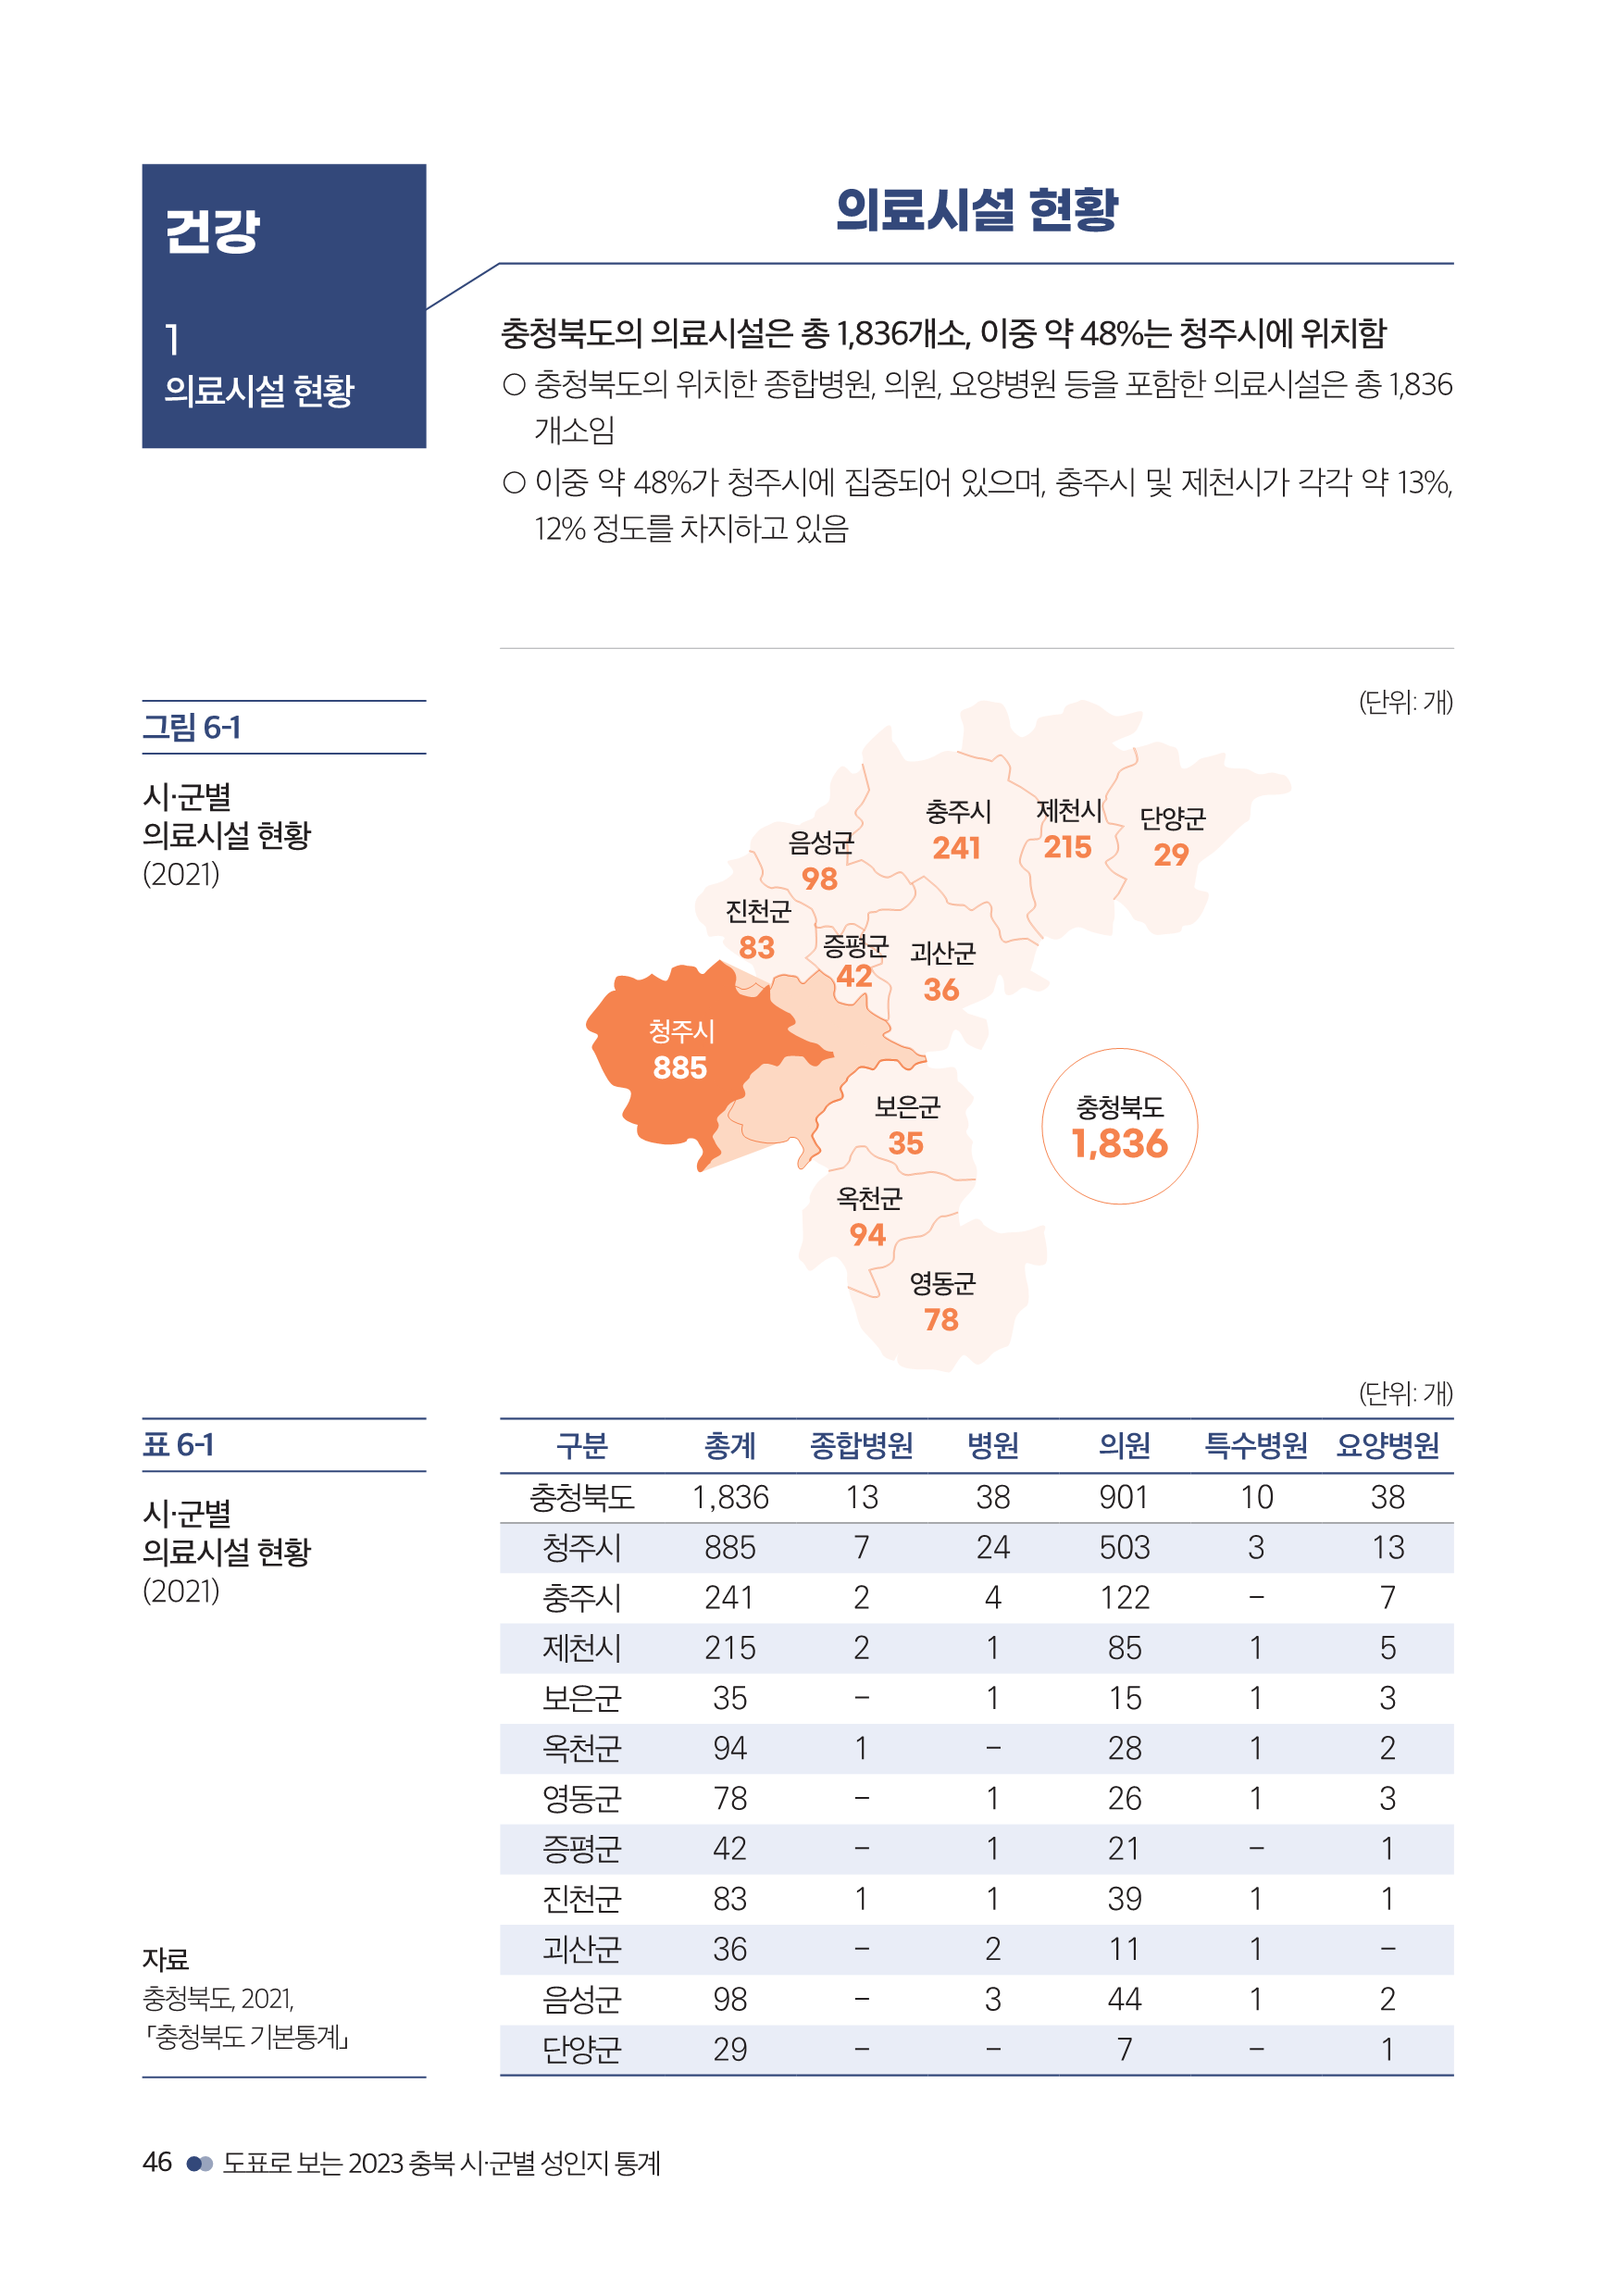 충북여성재단-성인지통계(인포)_웹용_48.png